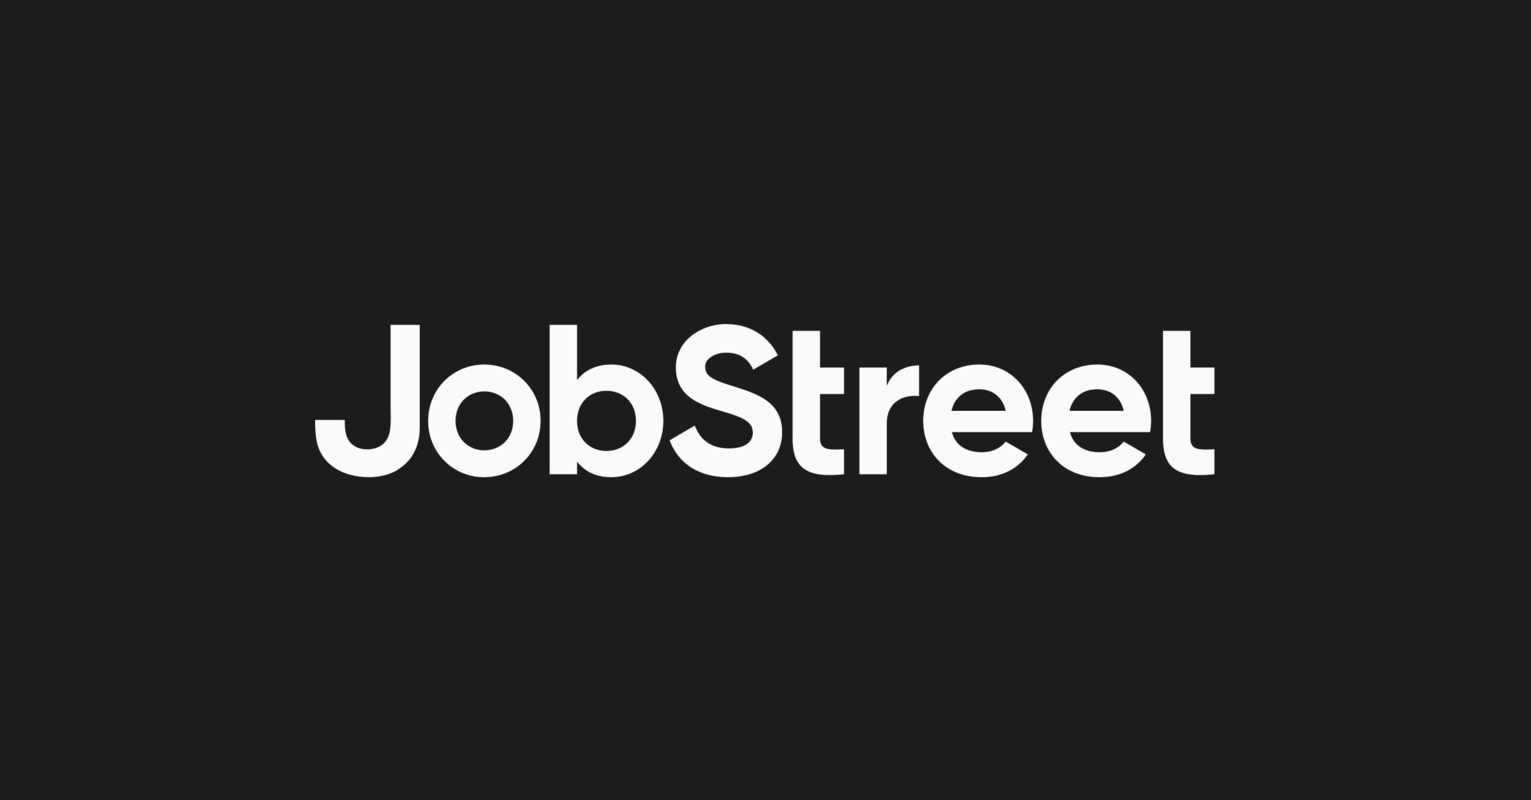 Giao diện website JobStreet rất đơn giản và gọn gàng, dễ sử dụng